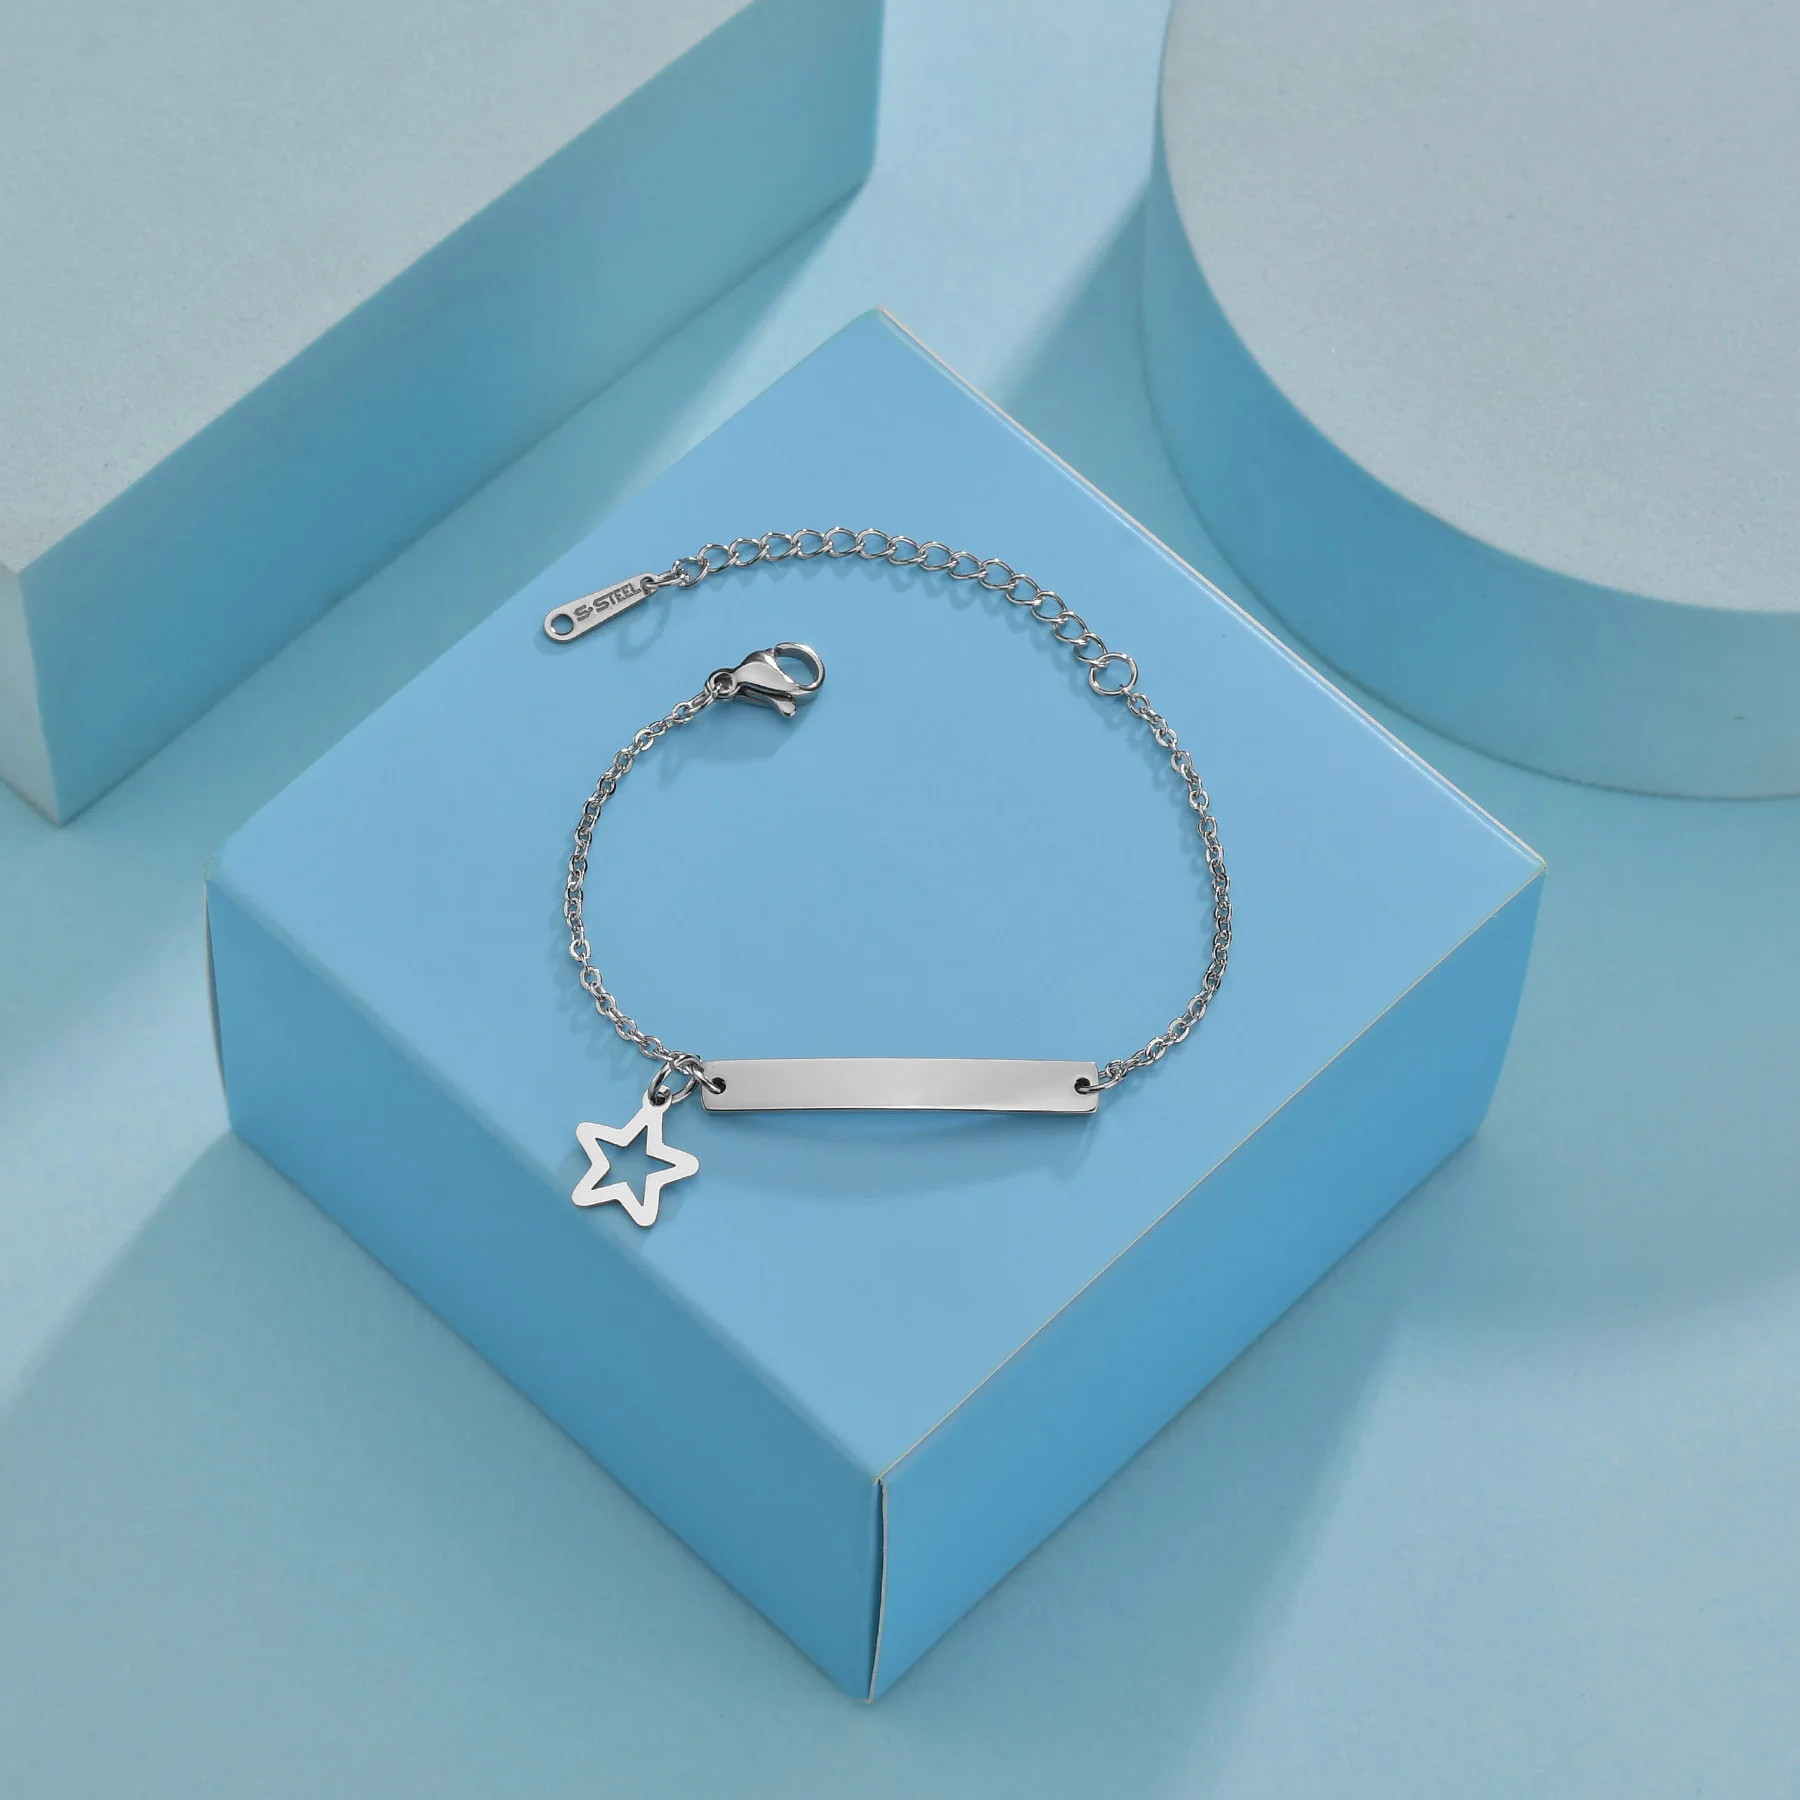 6 Luxury Baby Bracelets for Newborns - Little Star Jewellery